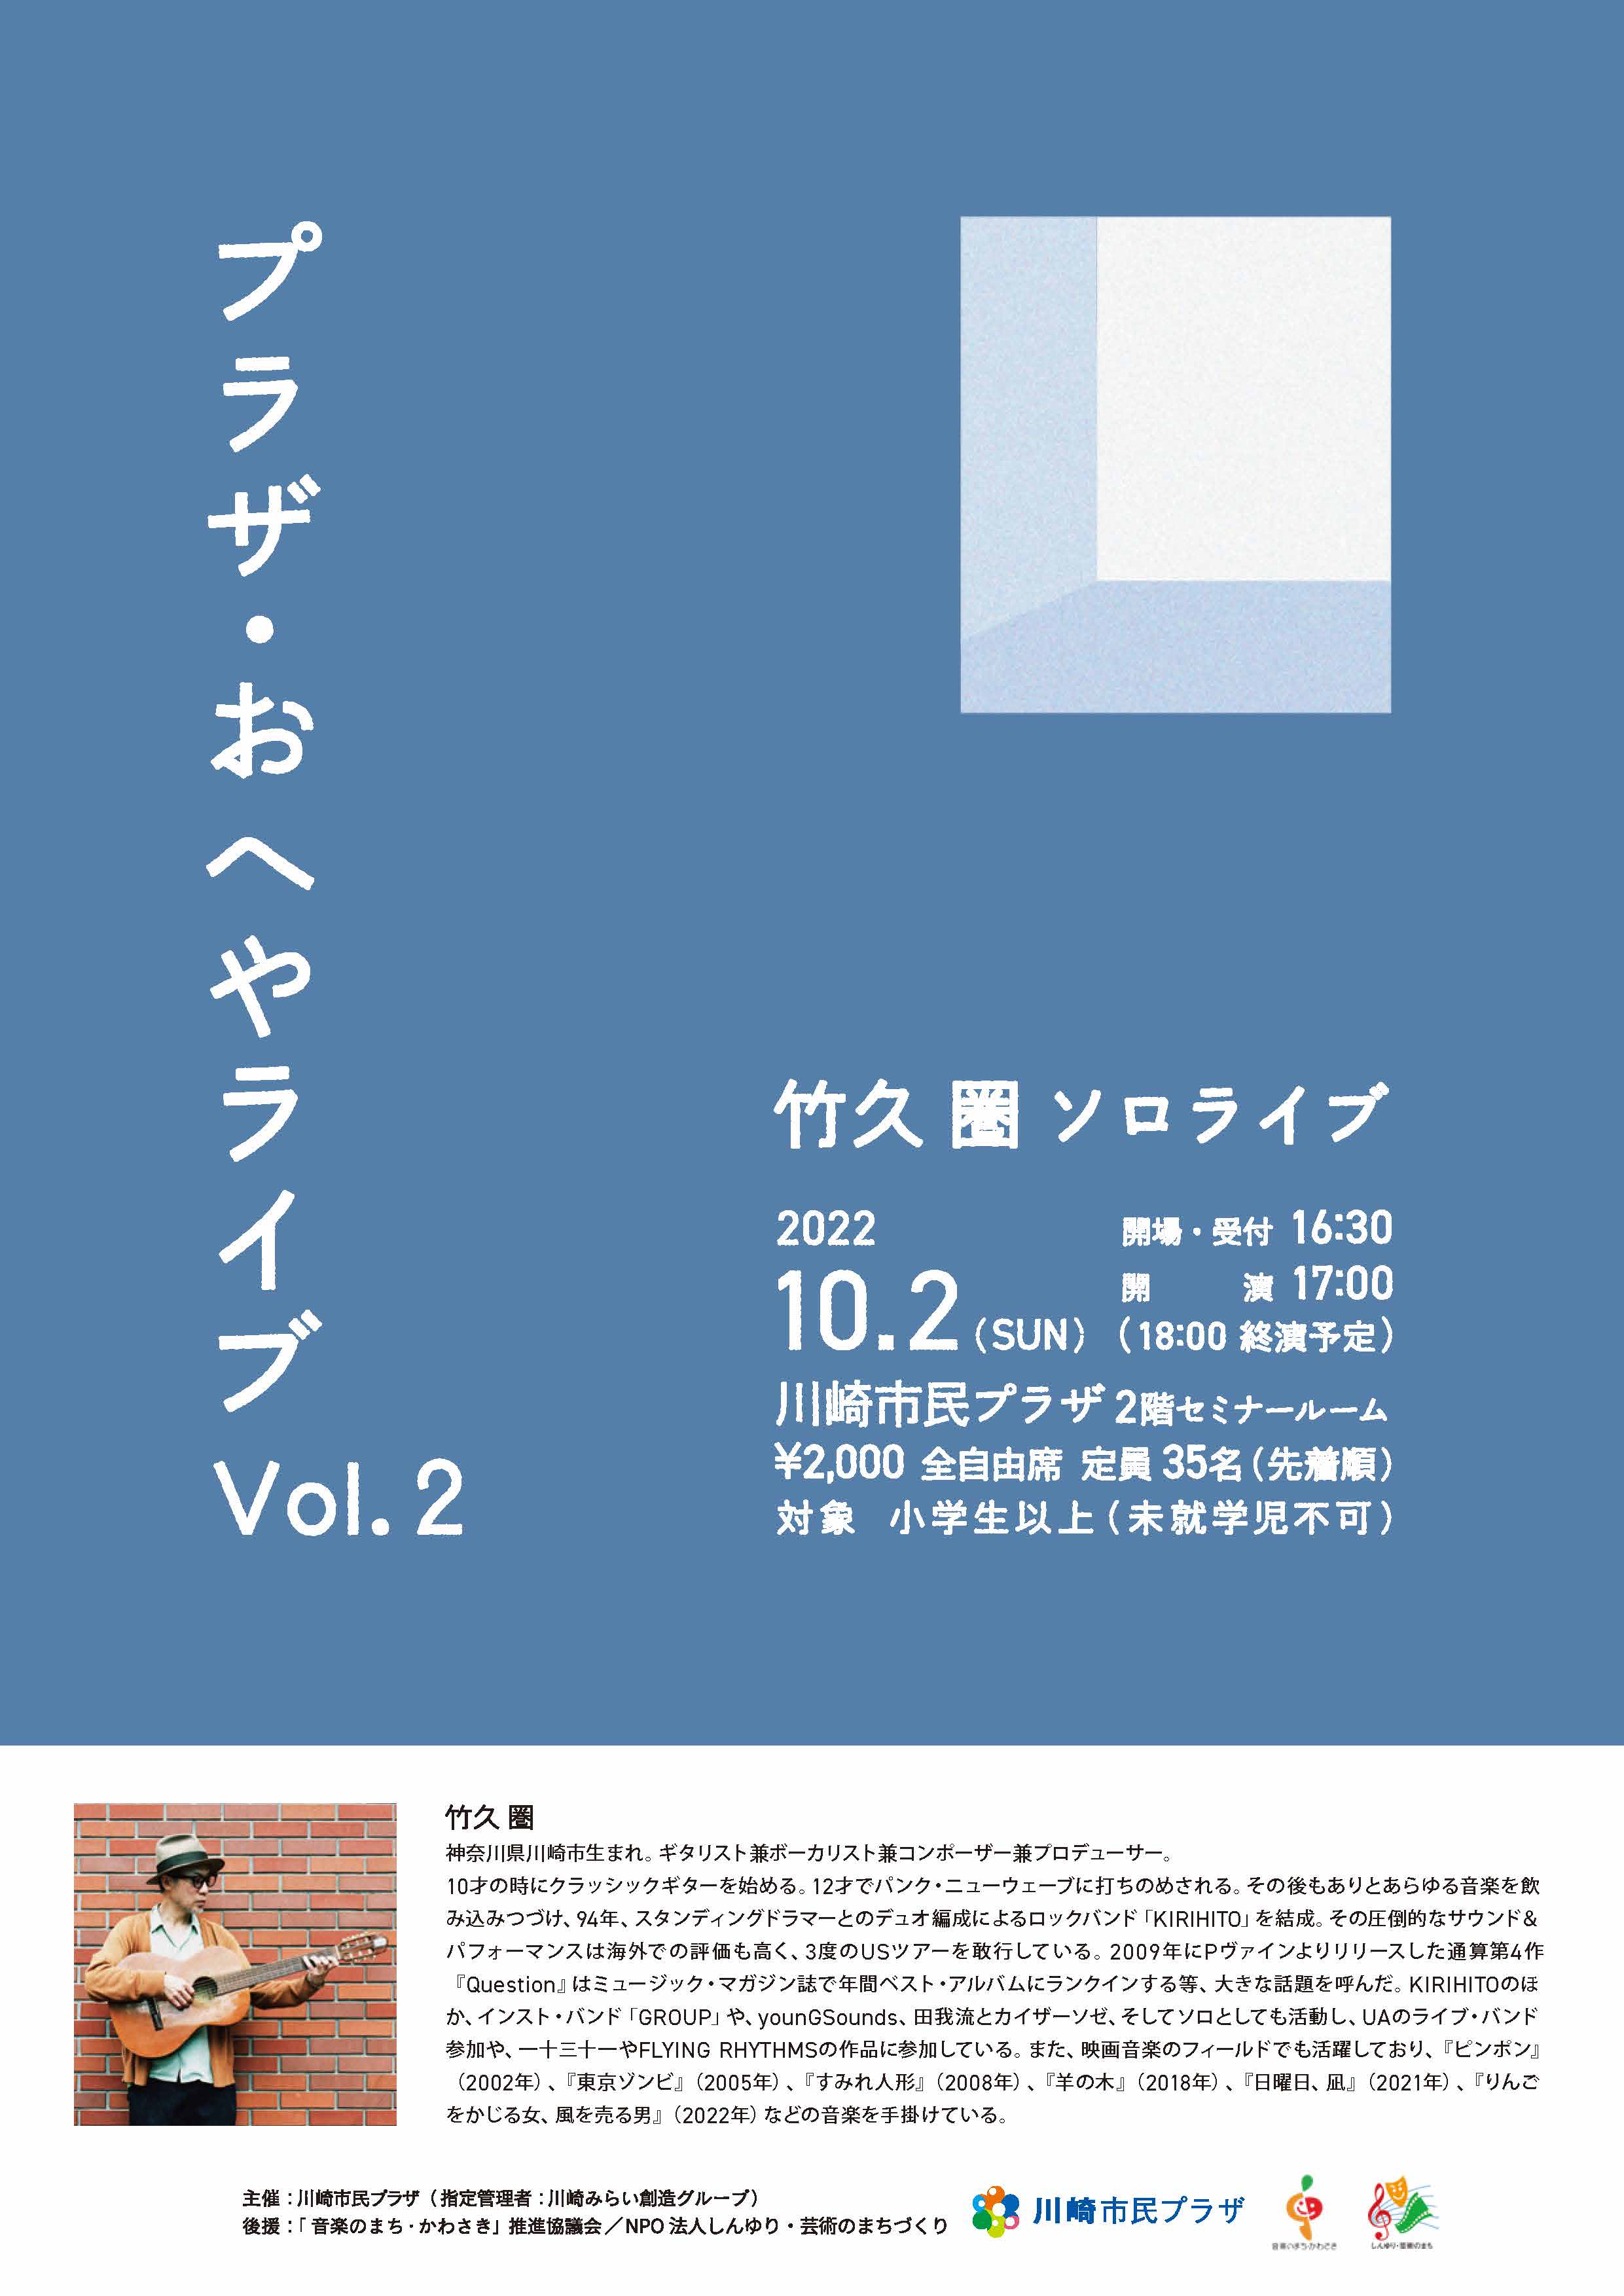 【2022年10月2日】プラザ・おへやライブ Vol.2 ～竹久圏 ソロライブ～